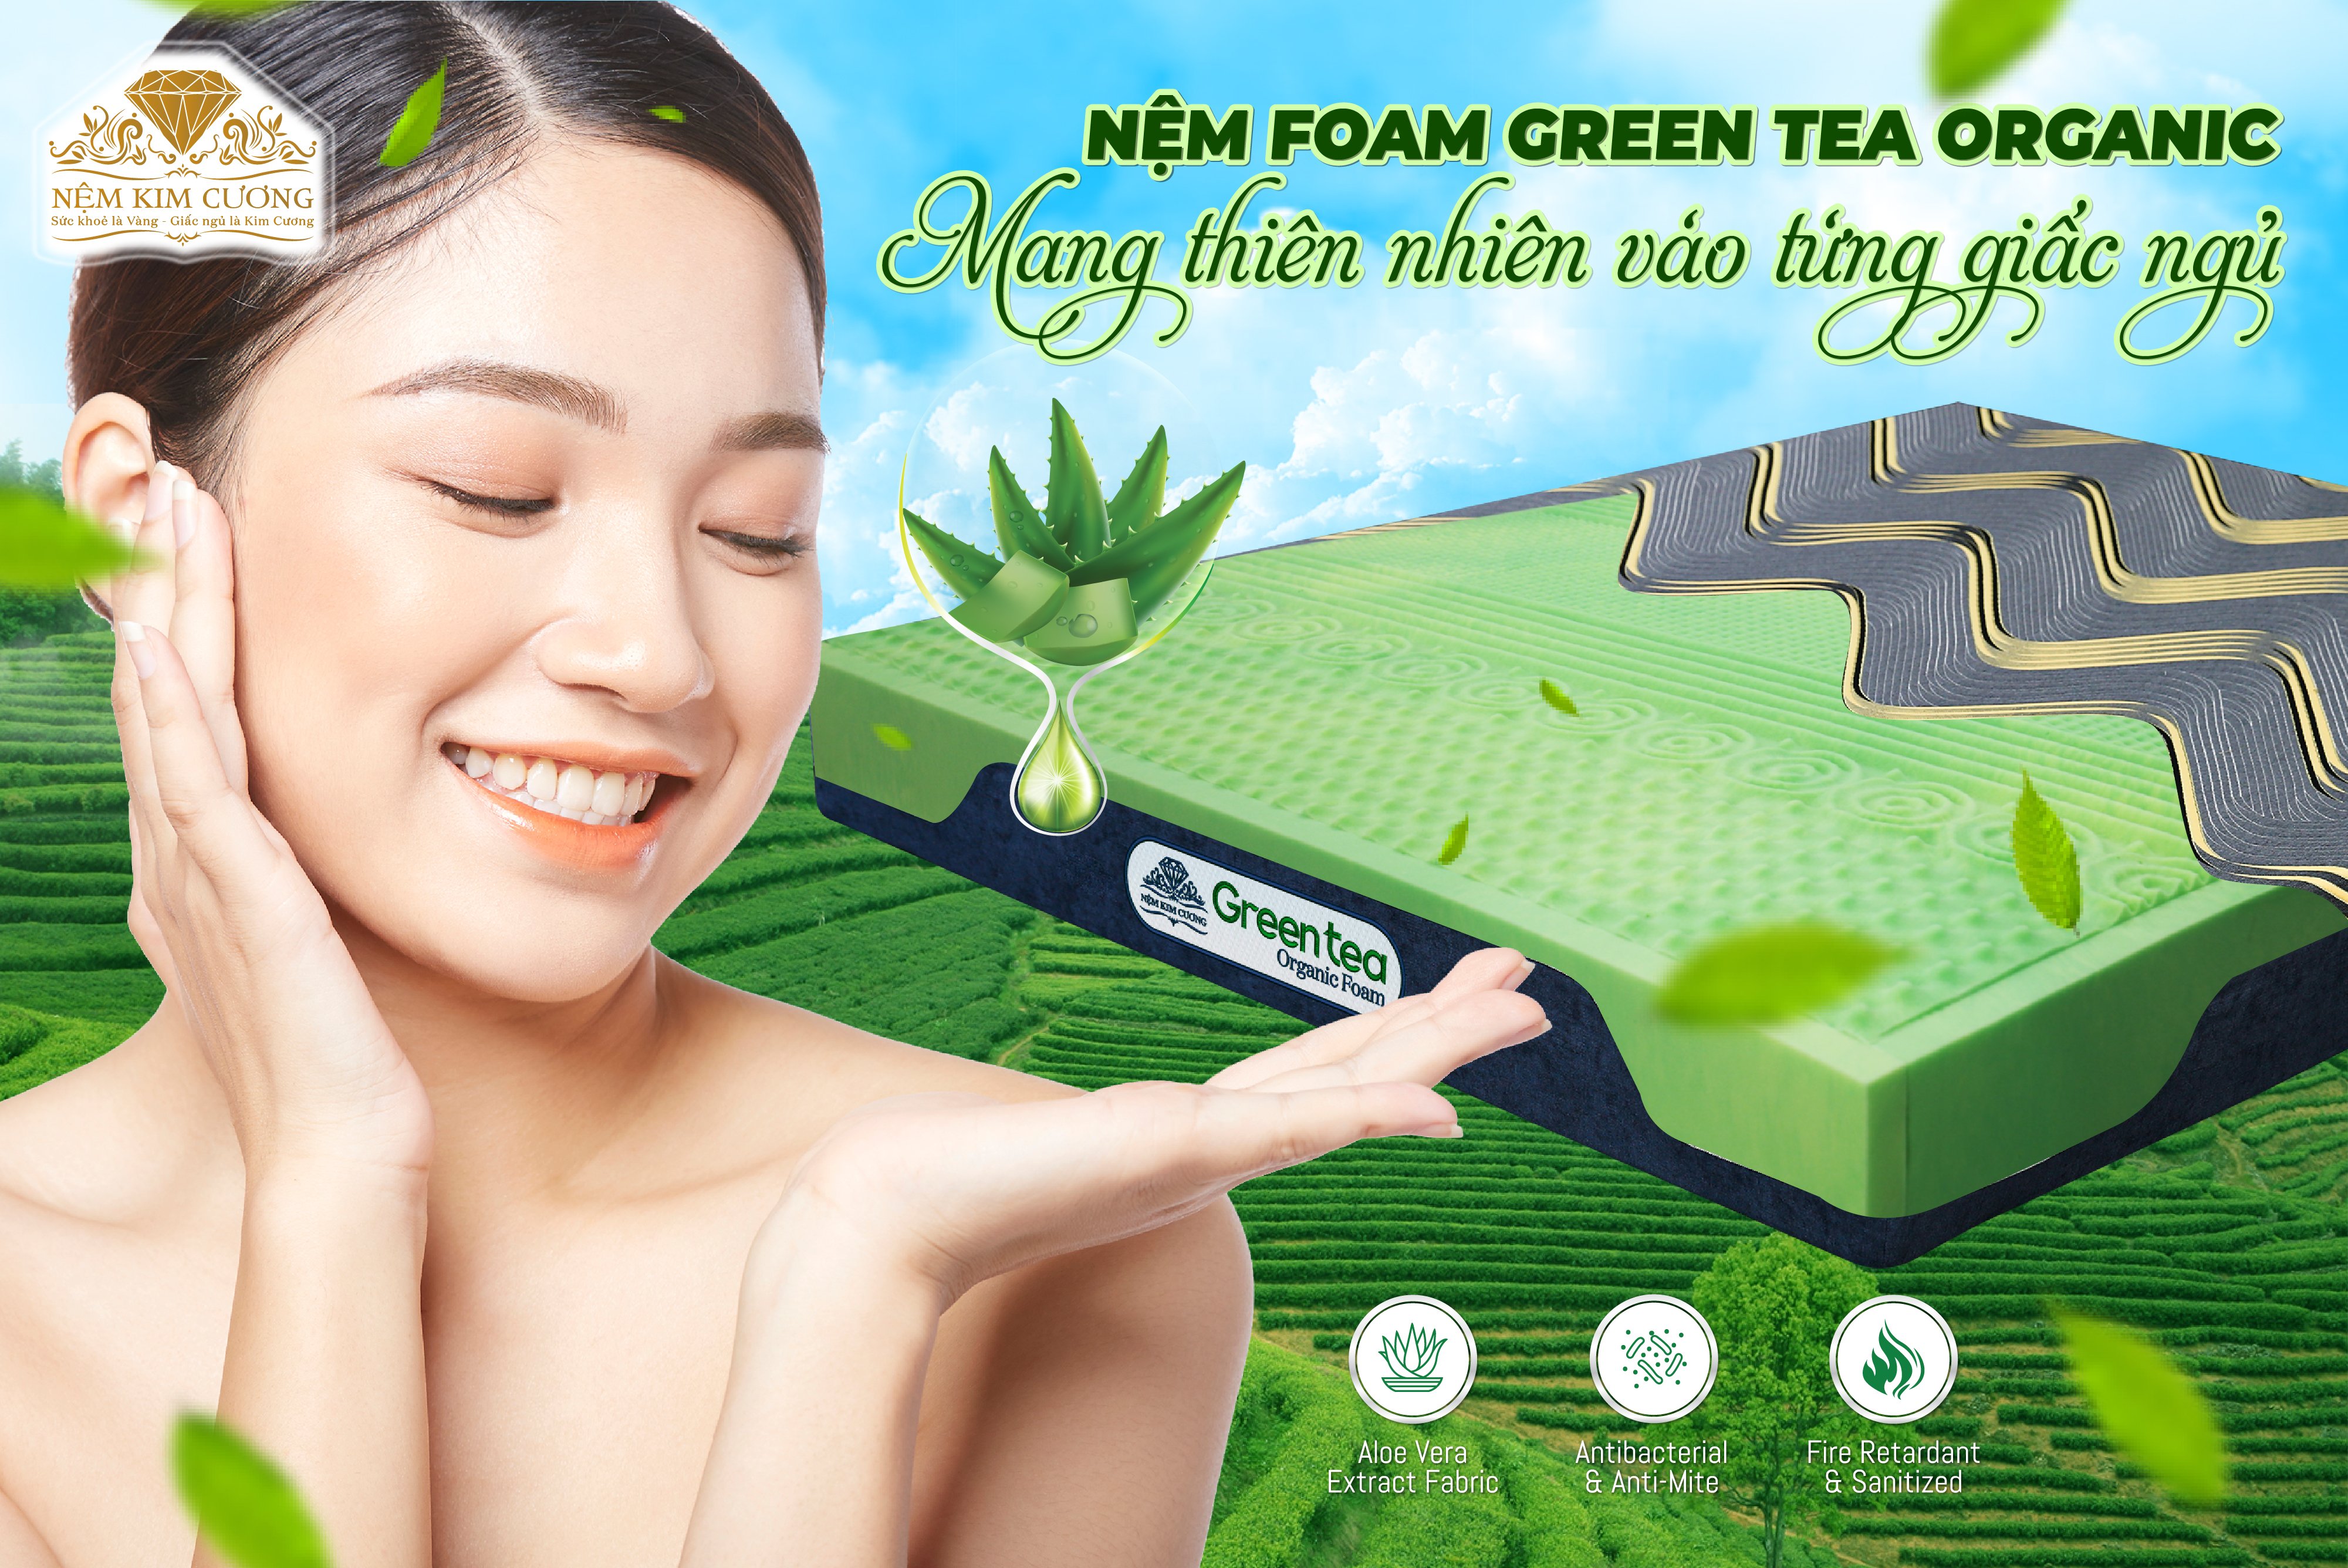 Nệm Foam Green Tea Organic - Nệm trà xanh cho giấc ngủ trong lành